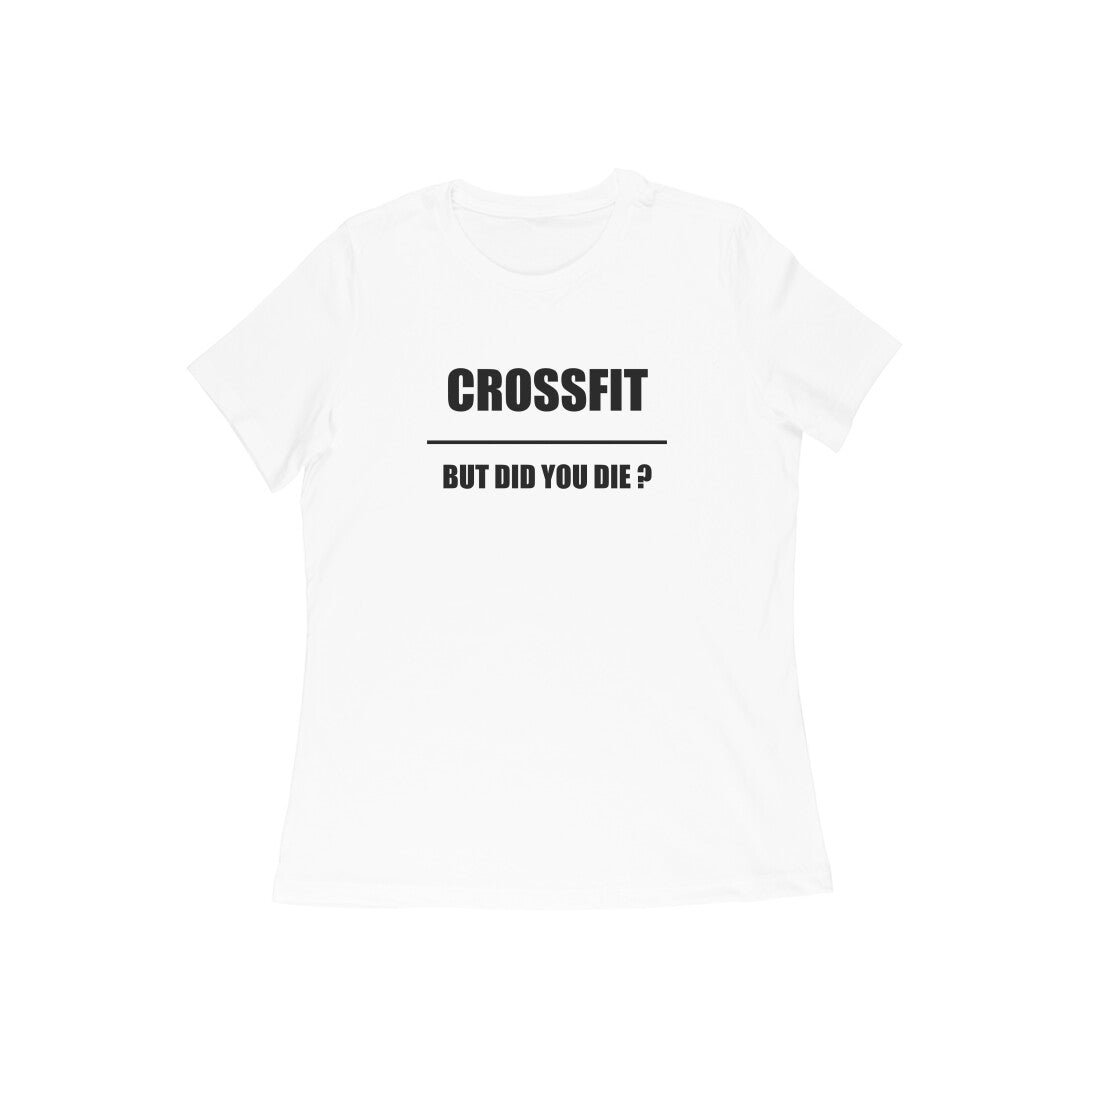 CrossFit but did you die?